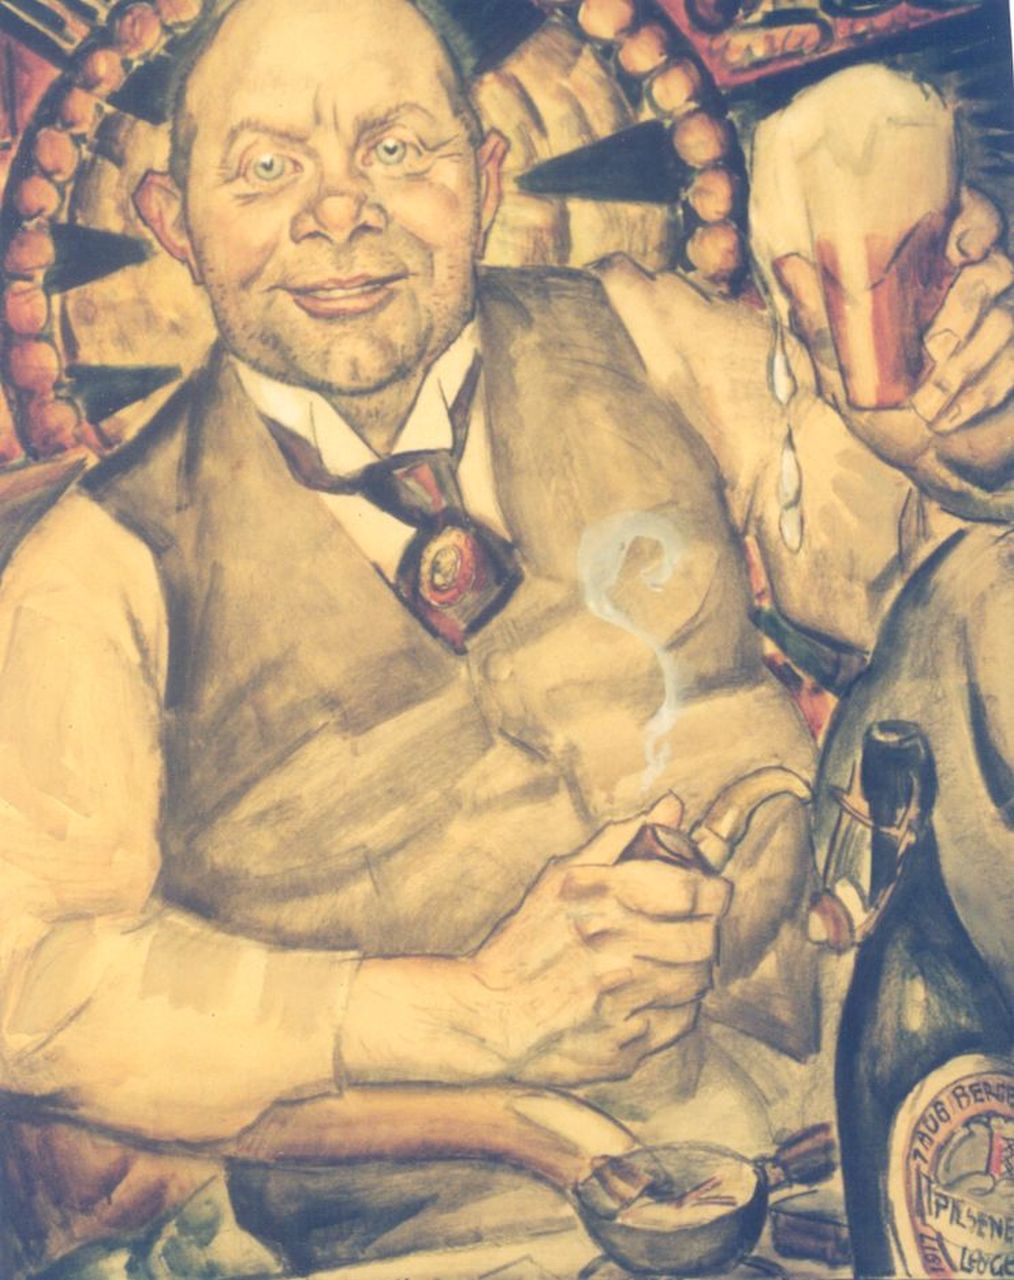 Gestel L.  | Leendert 'Leo' Gestel, Piet Boendermaker, zwart krijt en aquarel op papier 77,5 x 69,0 cm, gesigneerd rechtsonder en gedateerd 1 aug Bergen 1917 r.o. op de fles